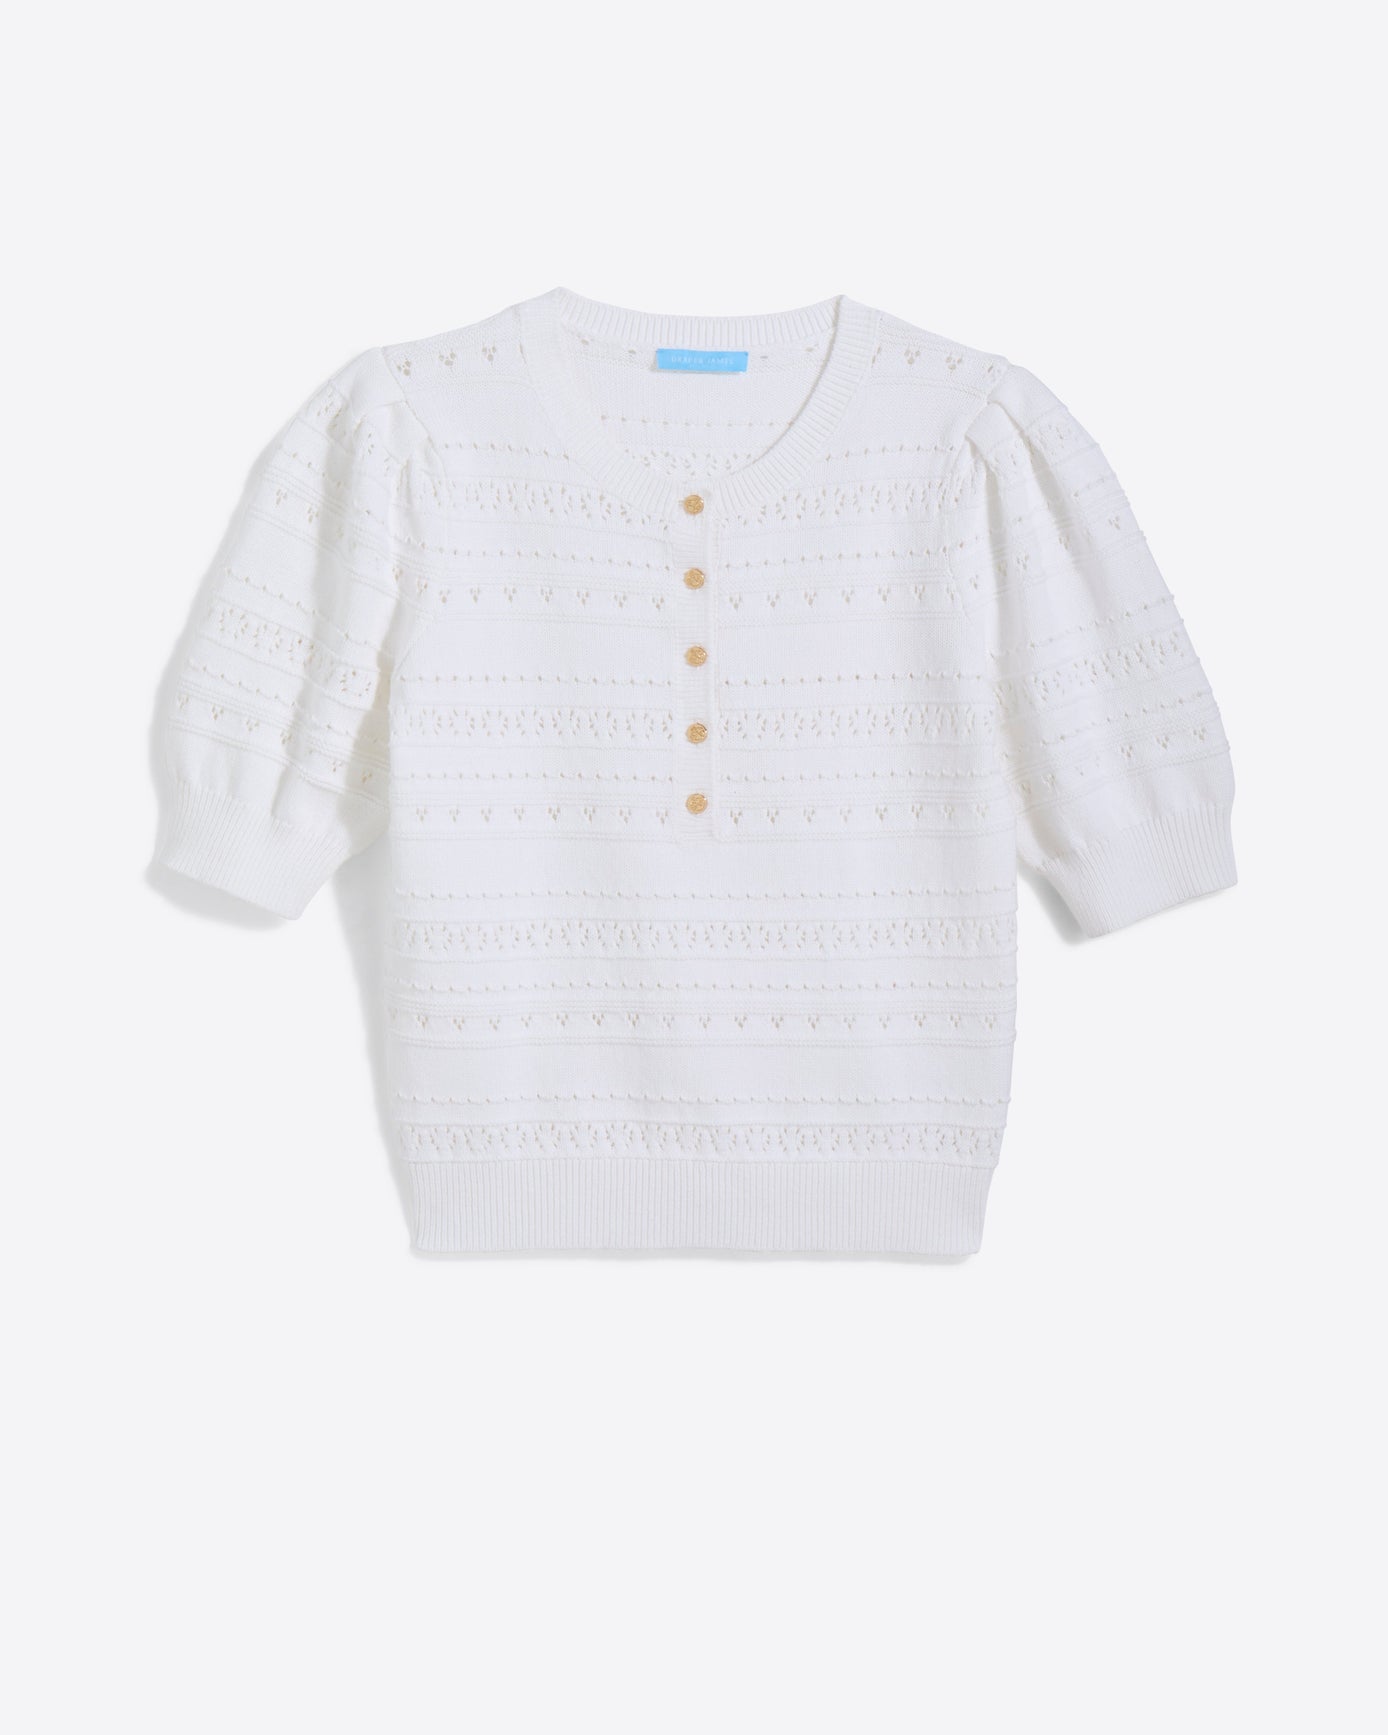 Annabelle Short-Sleeve Sweater in White Pointelle